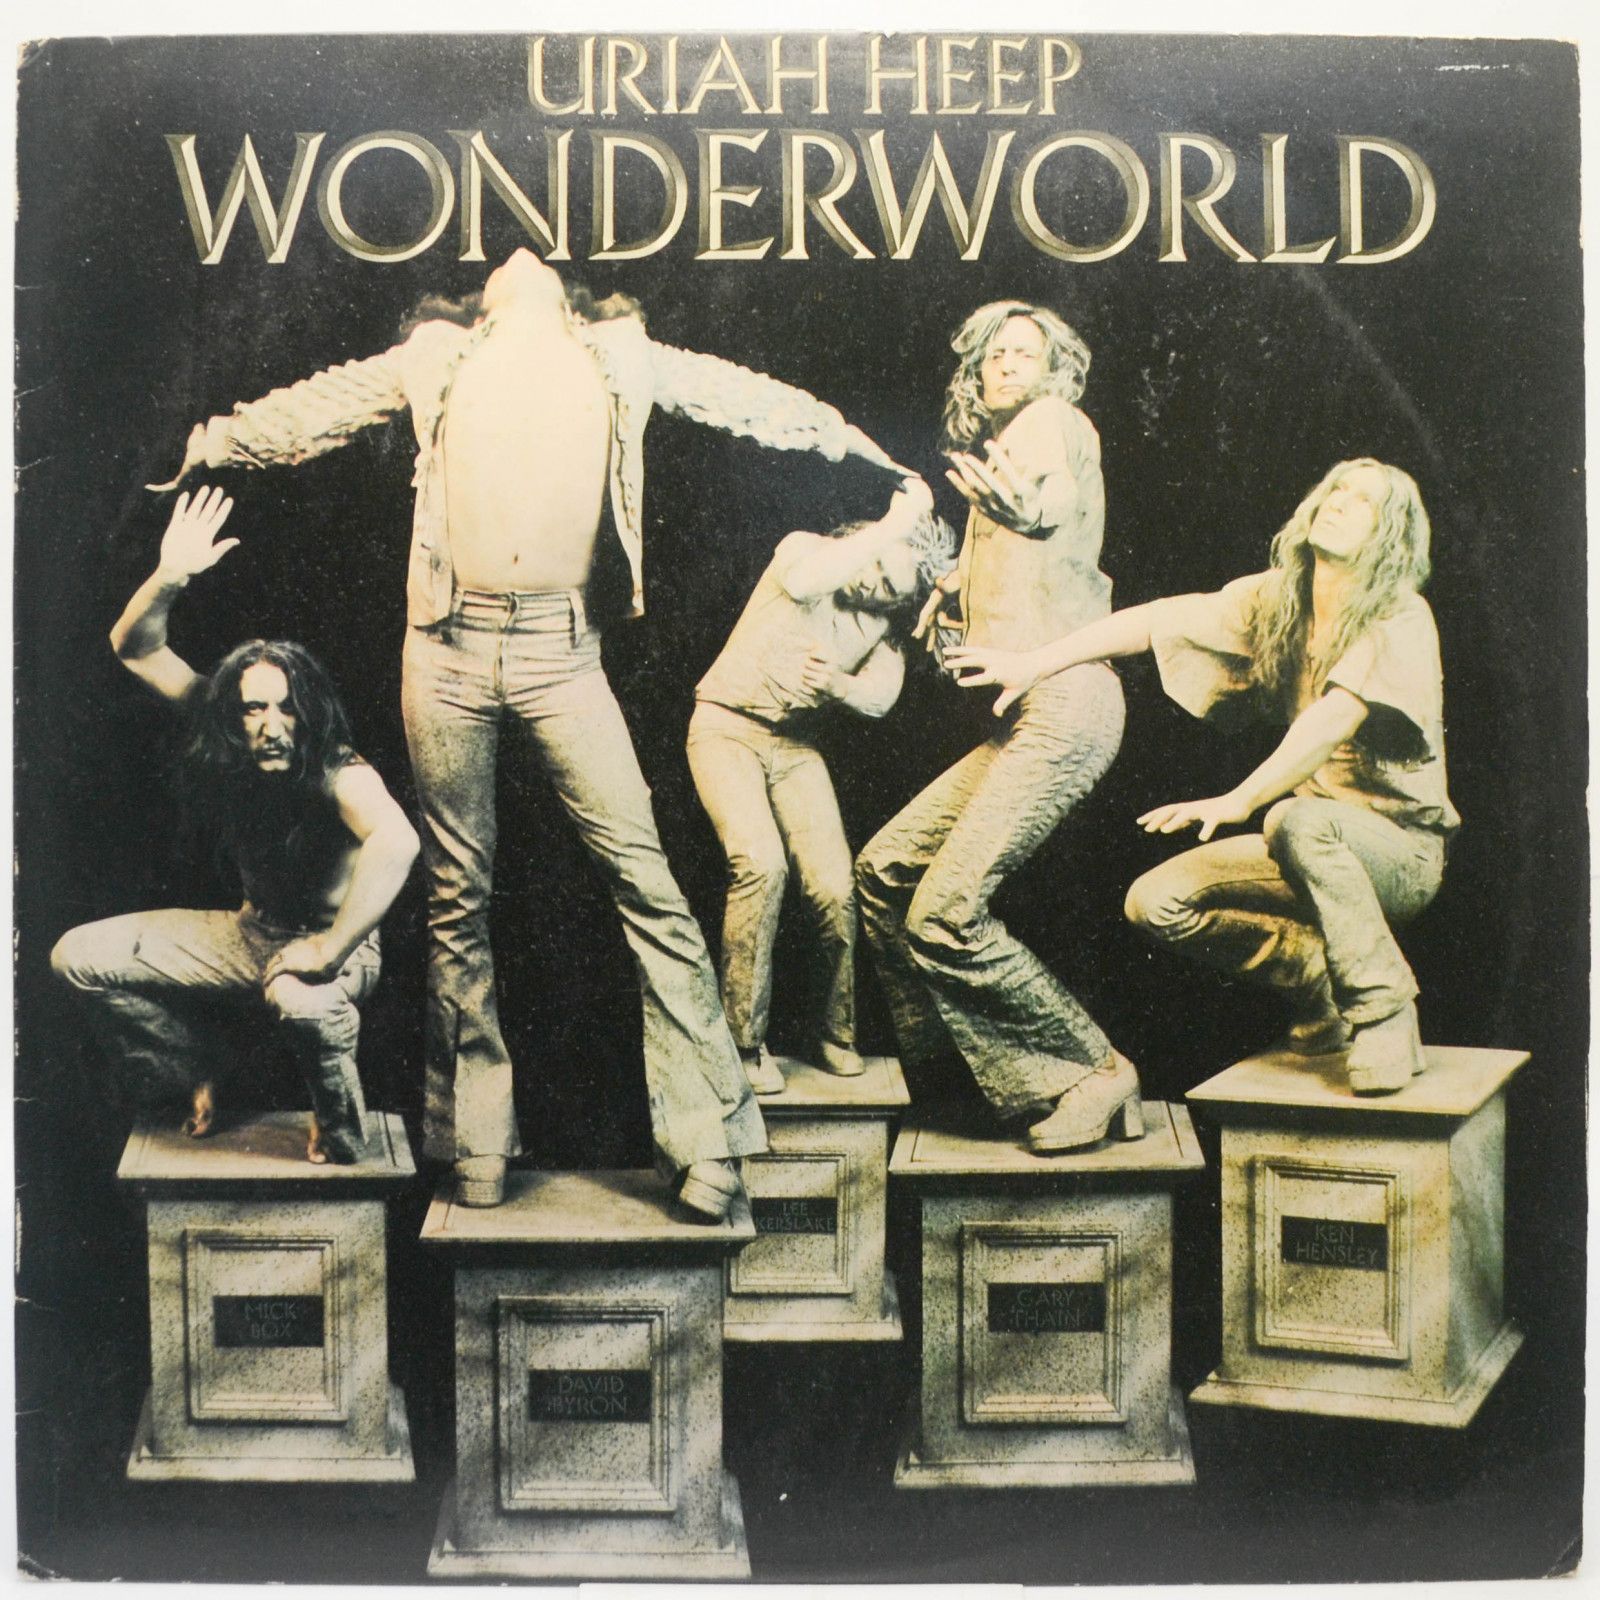 Uriah Heep — Wonderworld, 1974